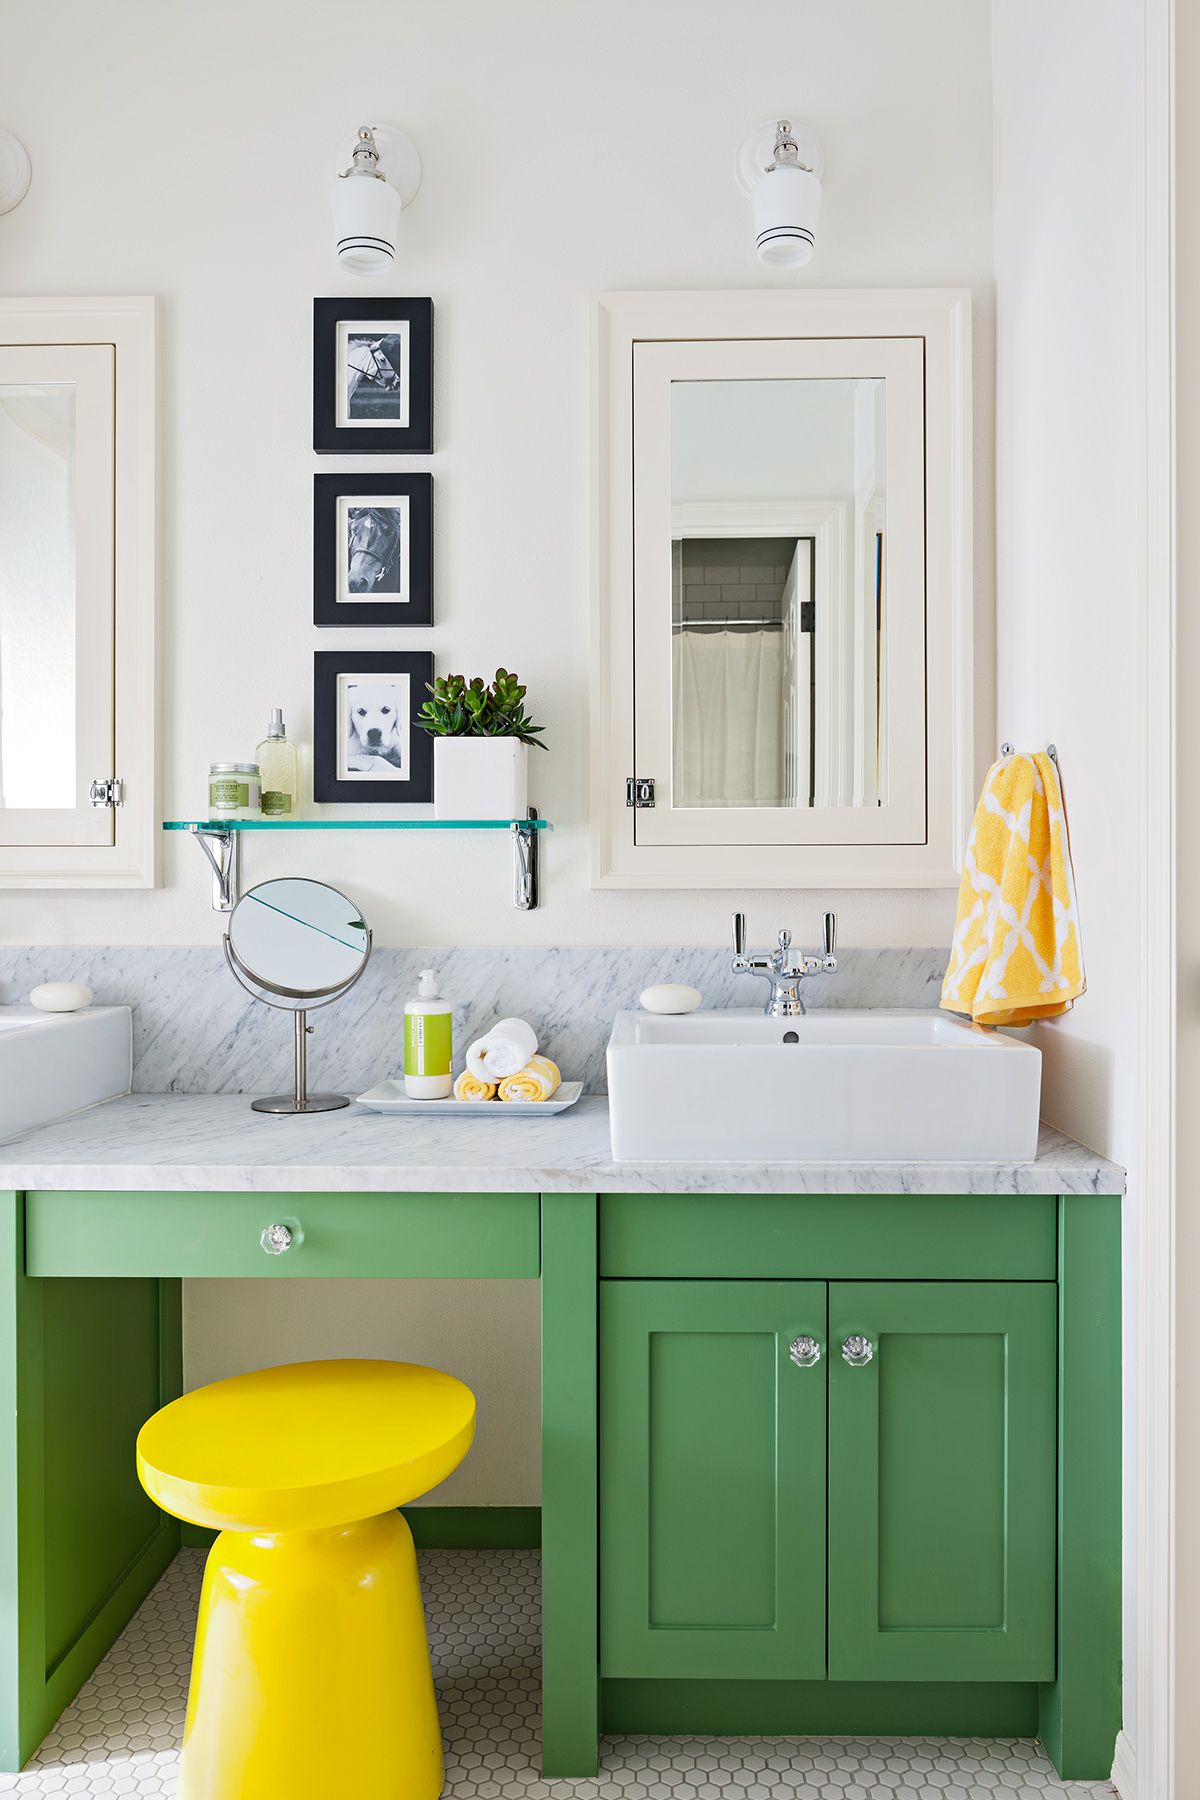 Chiếc tủ sơn xanh lá dịu nhẹ là nơi đặt bồn rửa bên phải và bàn trang điểm ở góc trái, thêm điểm nhấn là chiếc ghế màu vàng tươi thì càng tăng thêm phần bắt mắt.